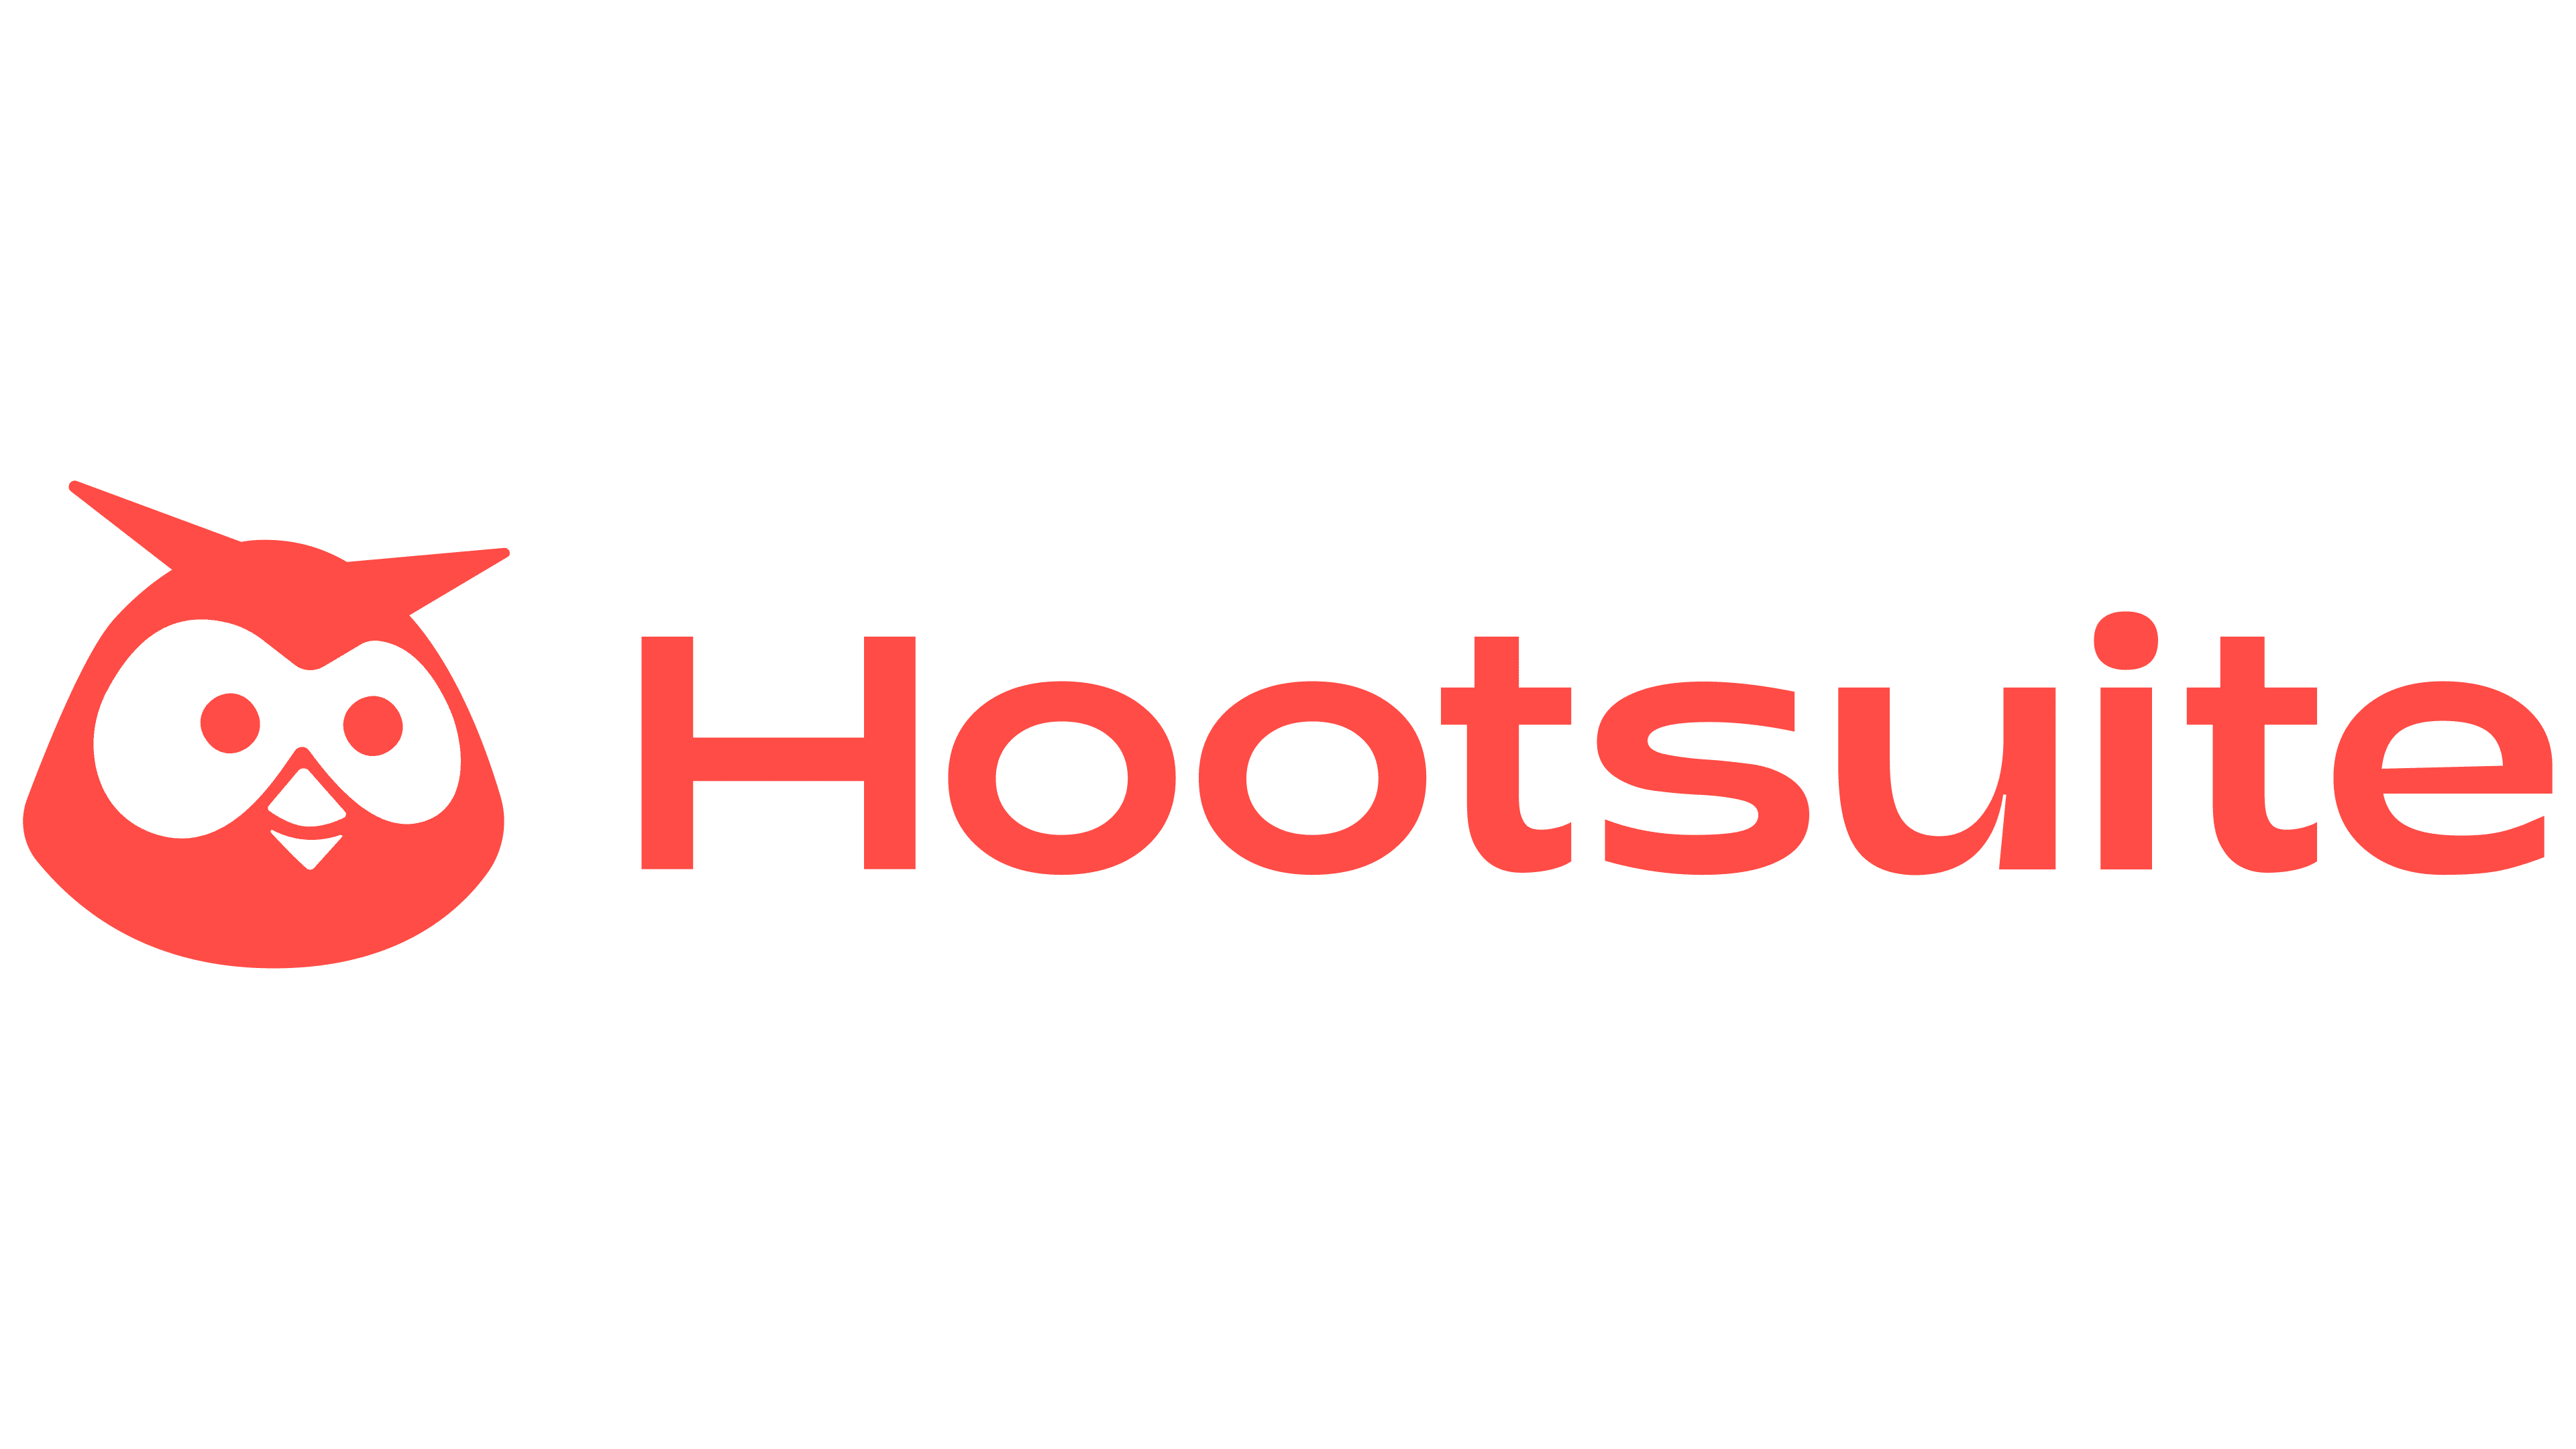 Hootsuite-Logo - Periódico PublicidAD - Periódico de Publicidad, Comunicación Comercial y Marketing